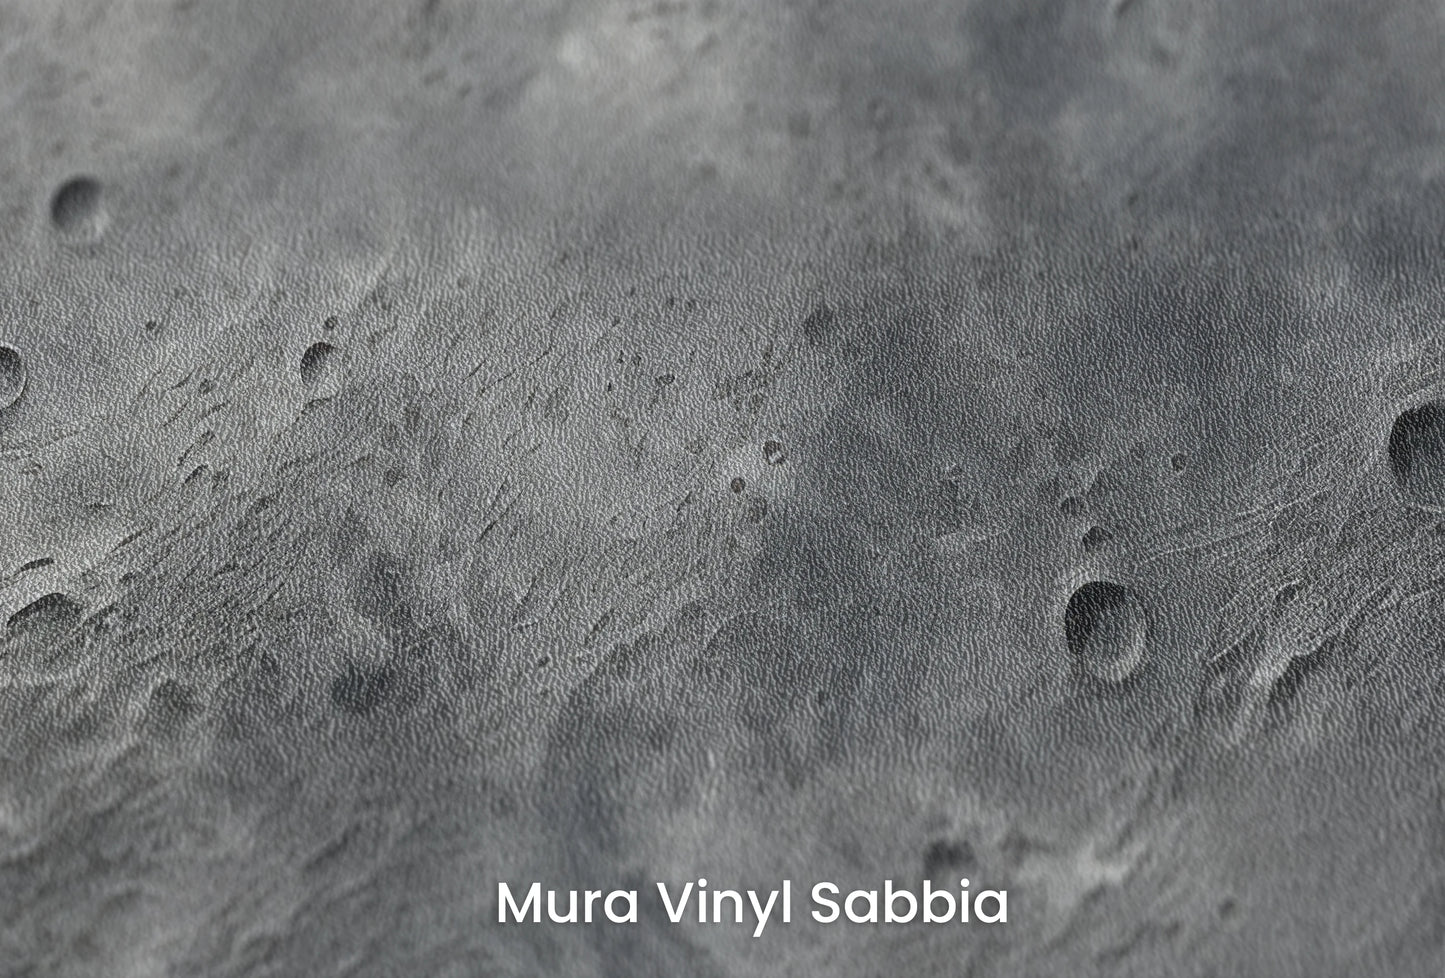 Zbliżenie na artystyczną fototapetę o nazwie Crater's Edge na podłożu Mura Vinyl Sabbia struktura grubego ziarna piasku.